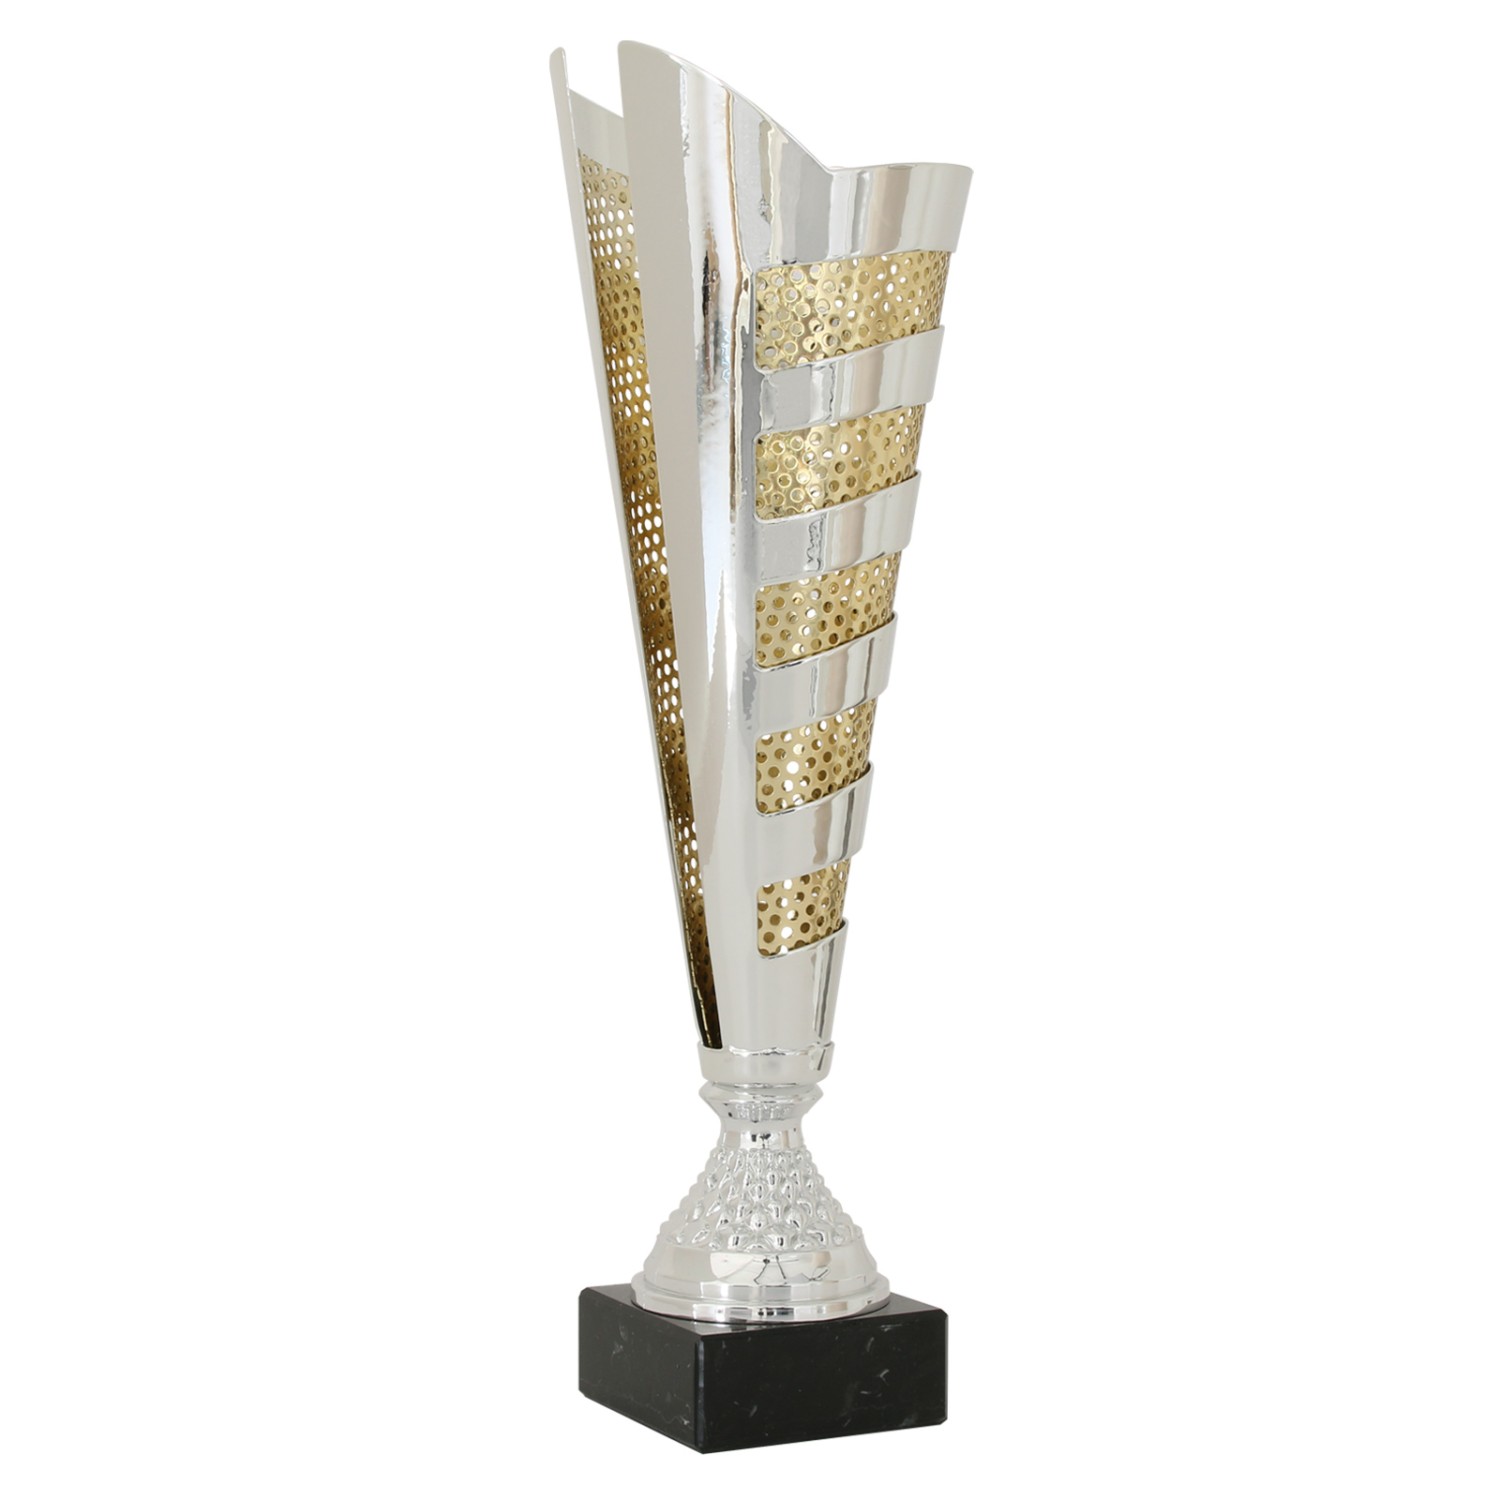 1. Foto Pokal Pokalset CLUNY Metall silber gold 3 Größen mit Gravur (Größe: Größe S 36 cm)